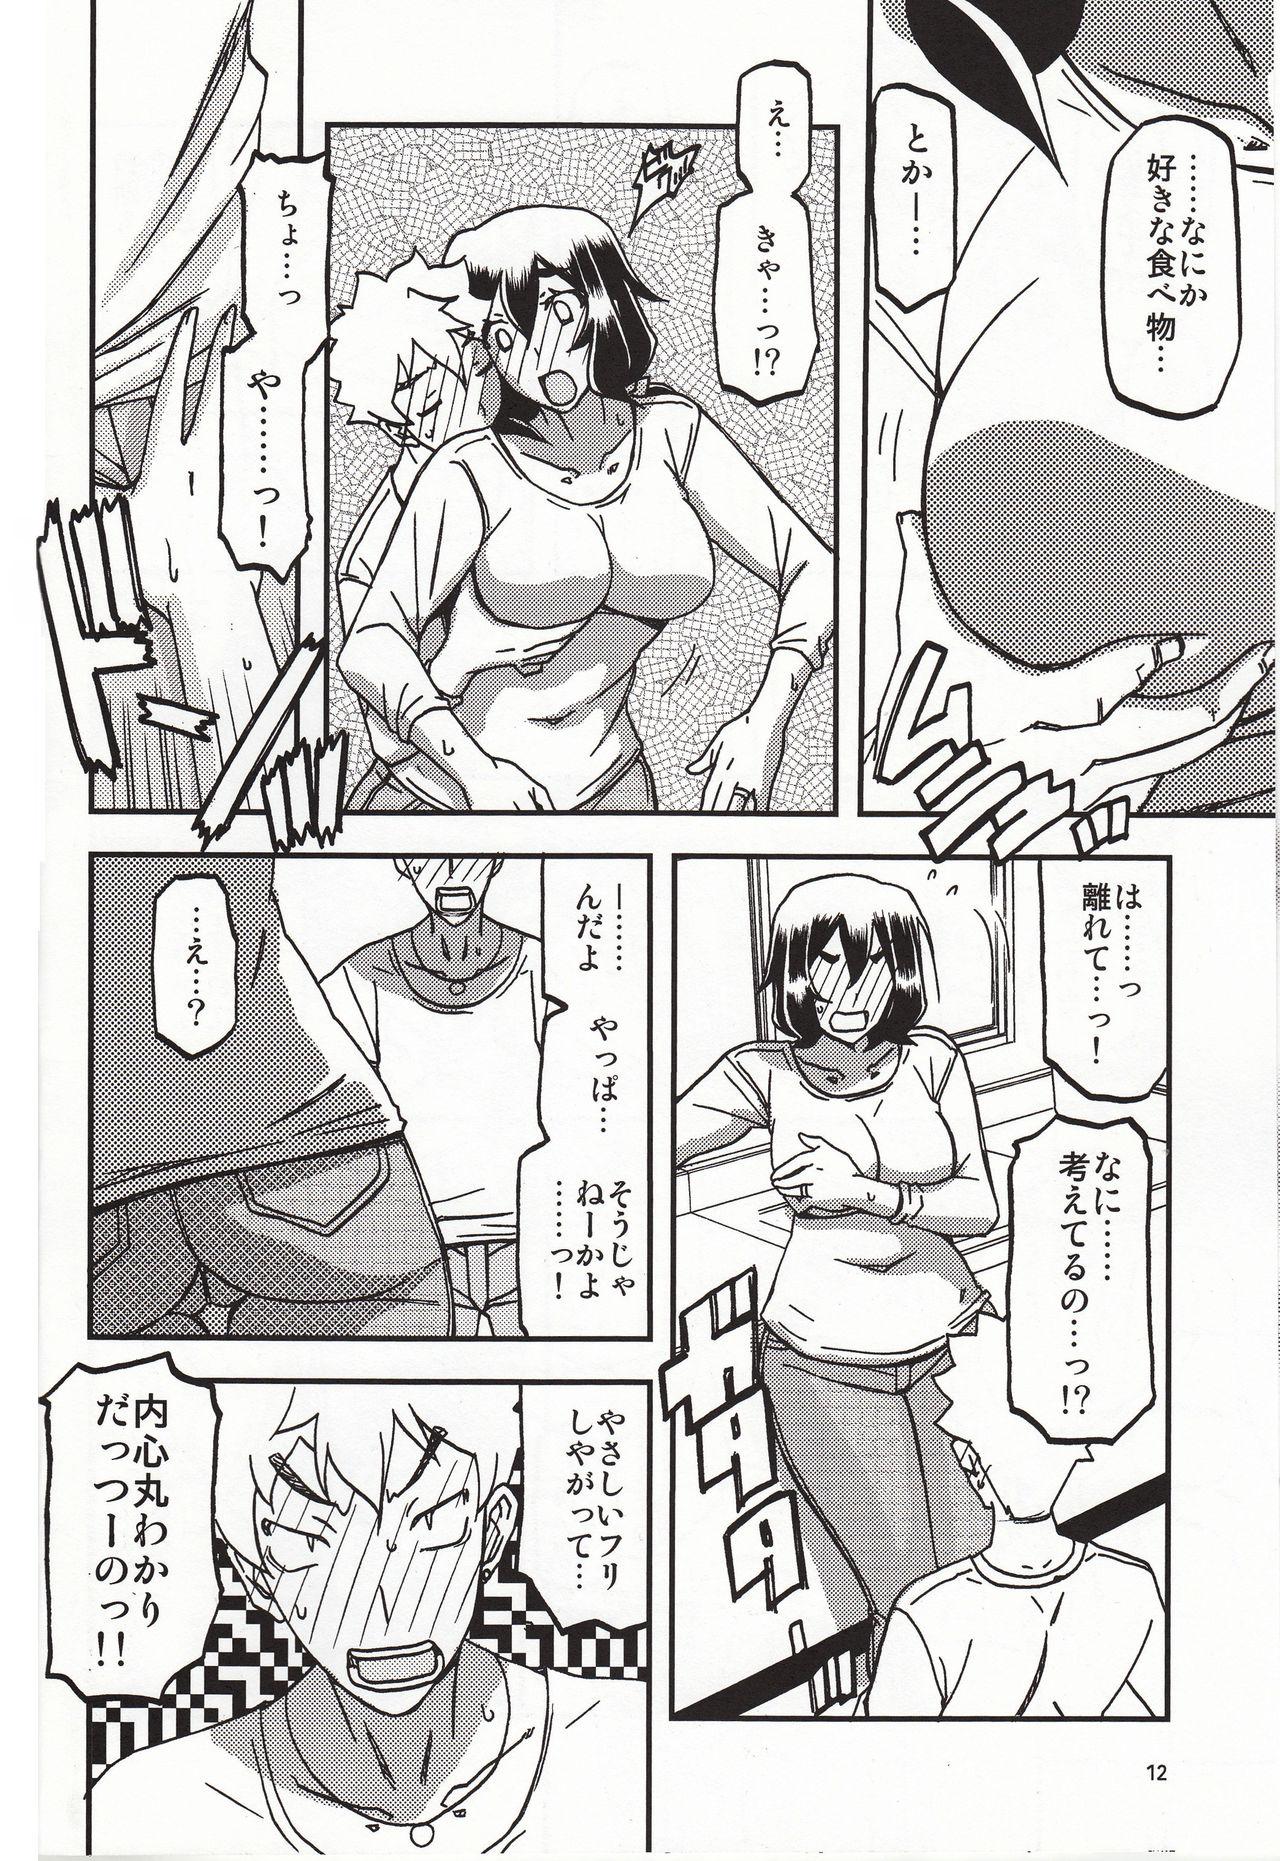 Peludo Akebi no Mi - Chizuru Katei - Akebi no mi Twistys - Page 11